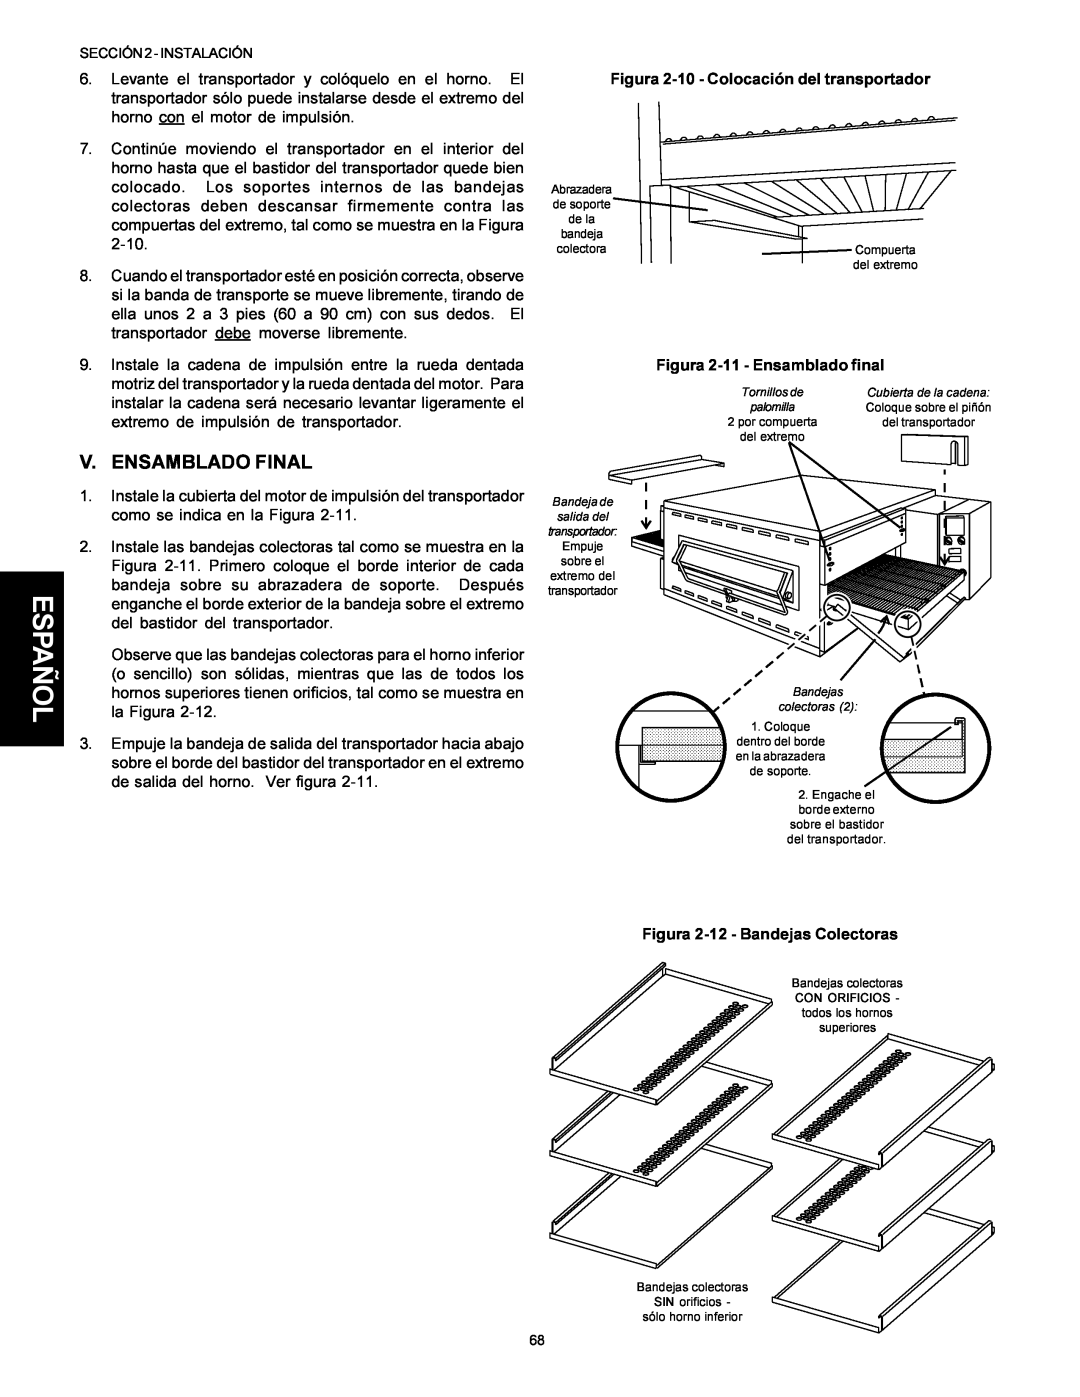 Middleby Marshall Model PS536 installation manual Español, V. Ensamblado Final, Figura 2-10 - Colocación del transportador 